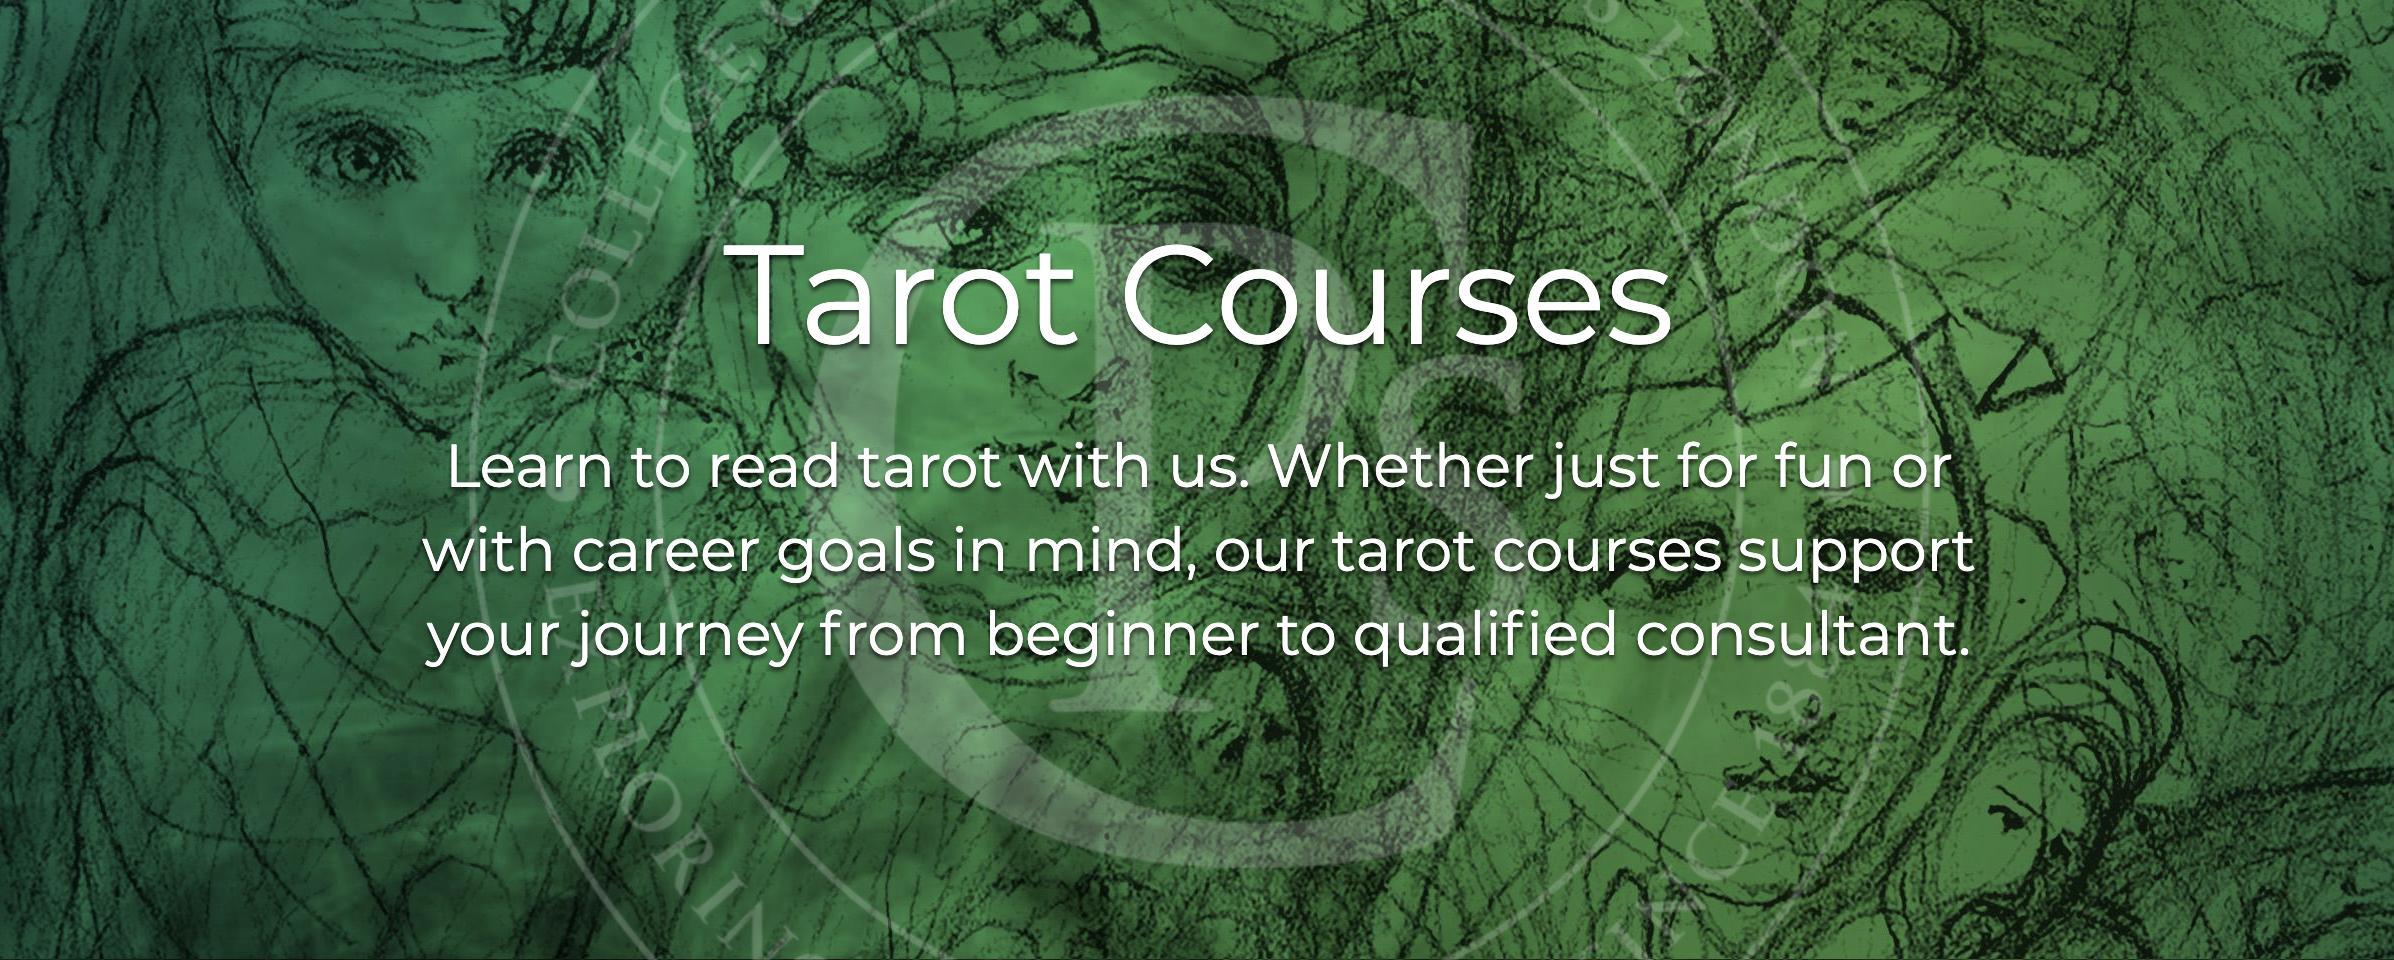 Tarot courses banner